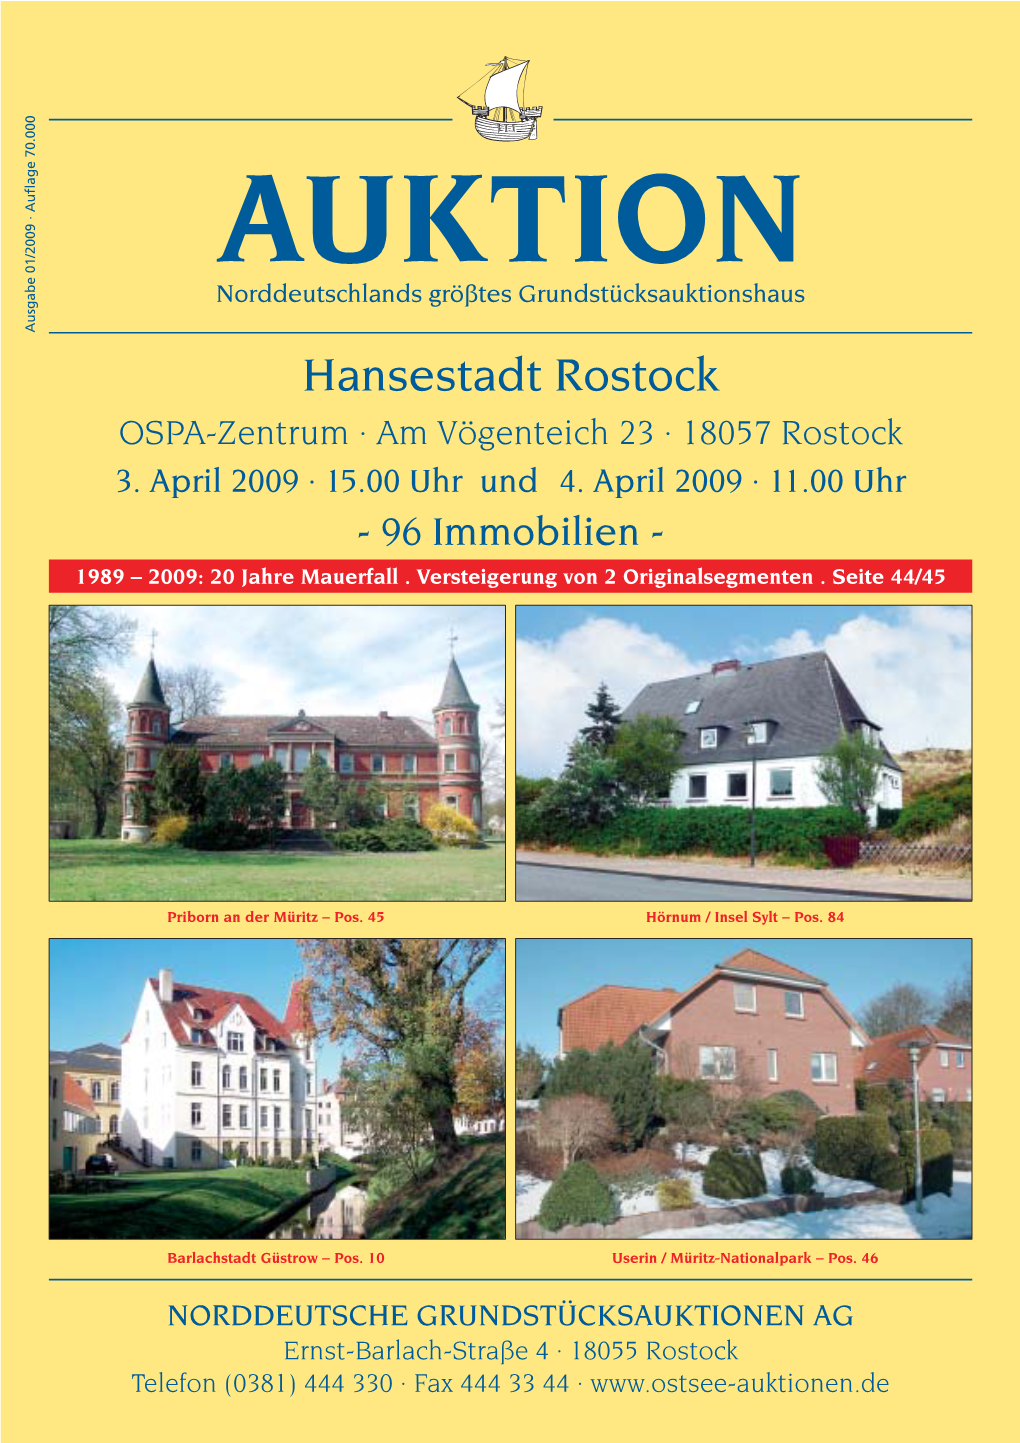 Hansestadt Rostock - 96Immobilien VORGESTELLT